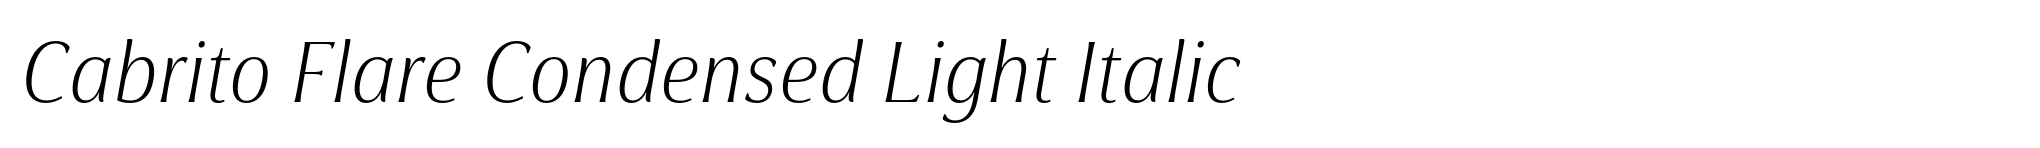 Cabrito Flare Condensed Light Italic image